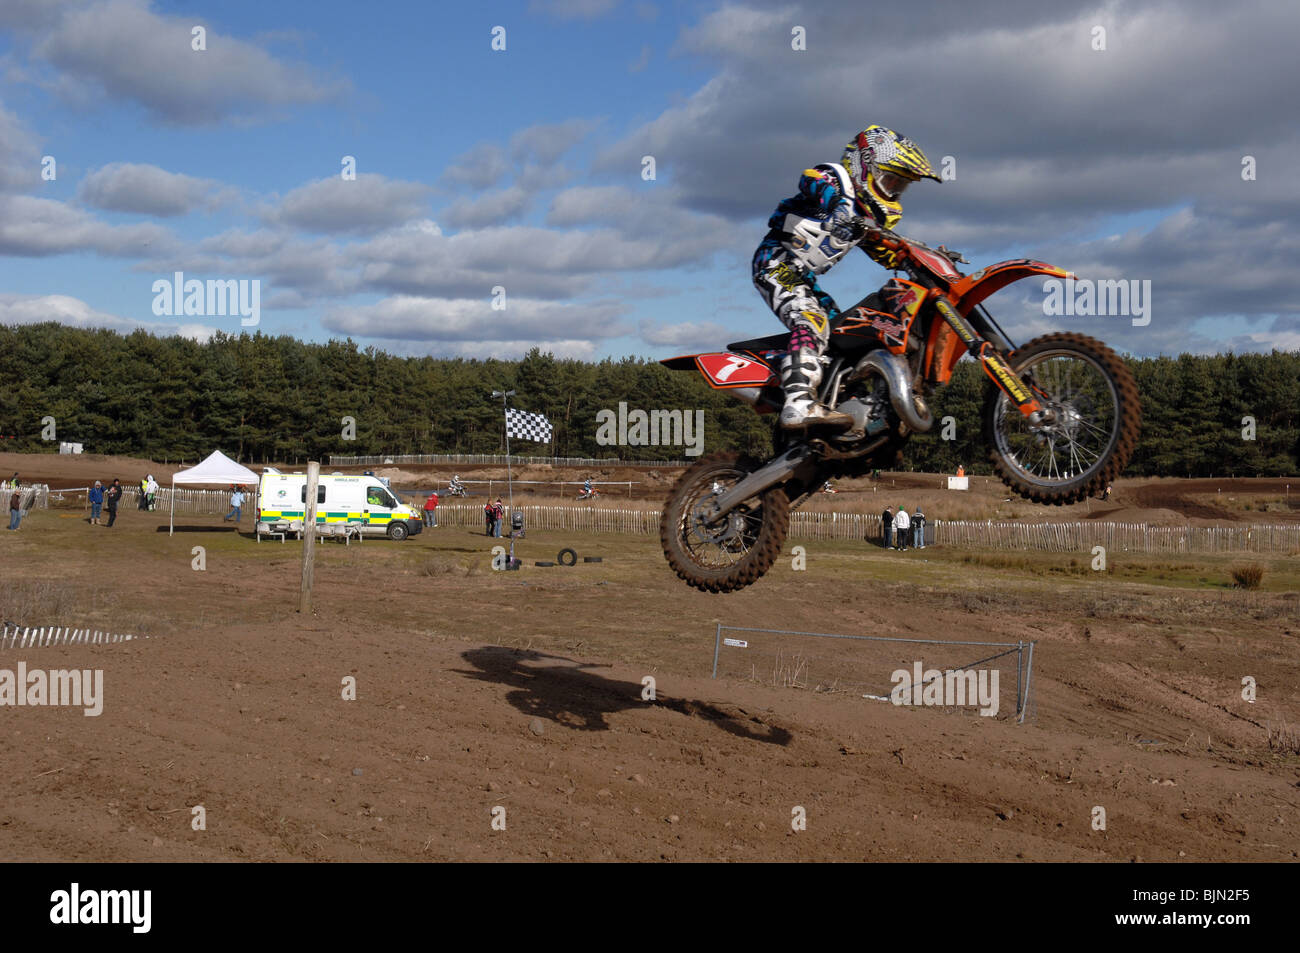 Motocycliste de haut vol dans l'air sur son vélo motocross Banque D'Images